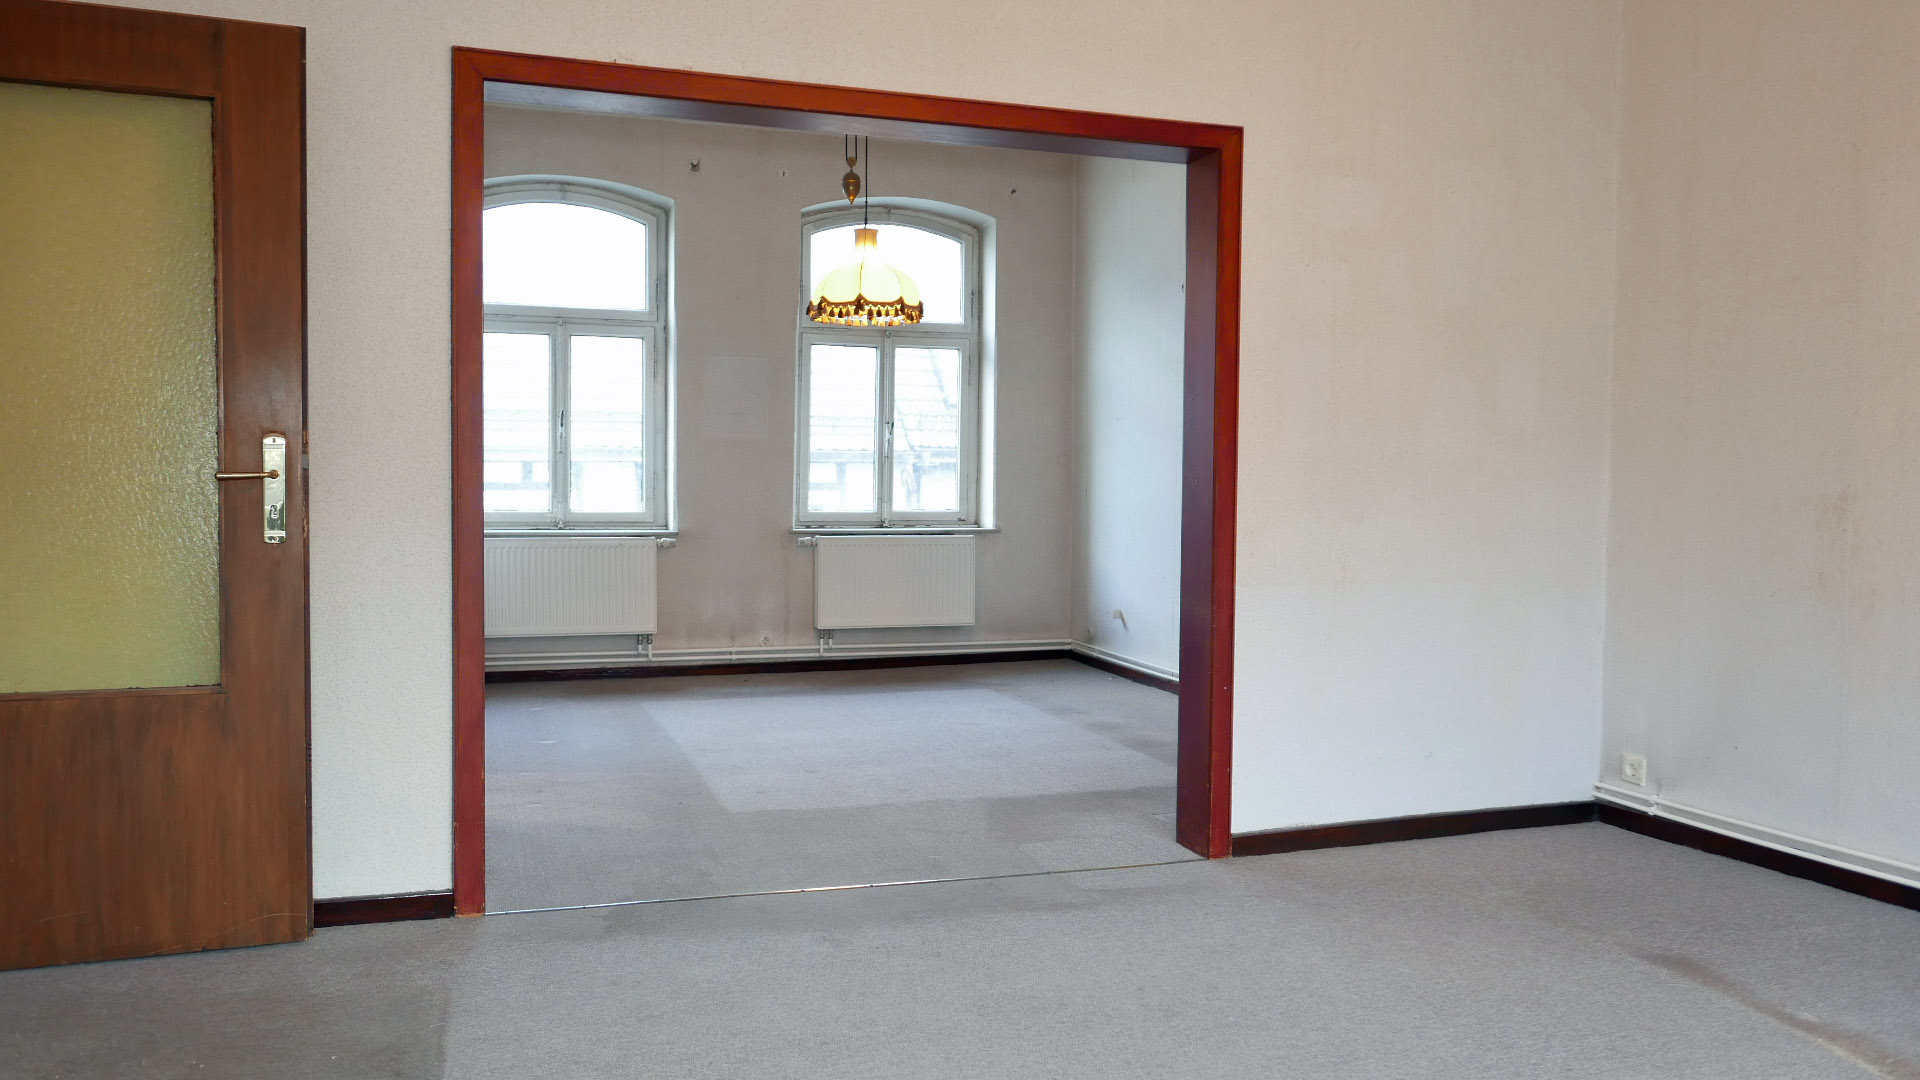 Morsbach/Zentrum: Wohn-/Geschäftshaus mit 2 Wohnungen und Ladenlokal, helle Räume mit großen Fenstern. Hier: das Wohn-...